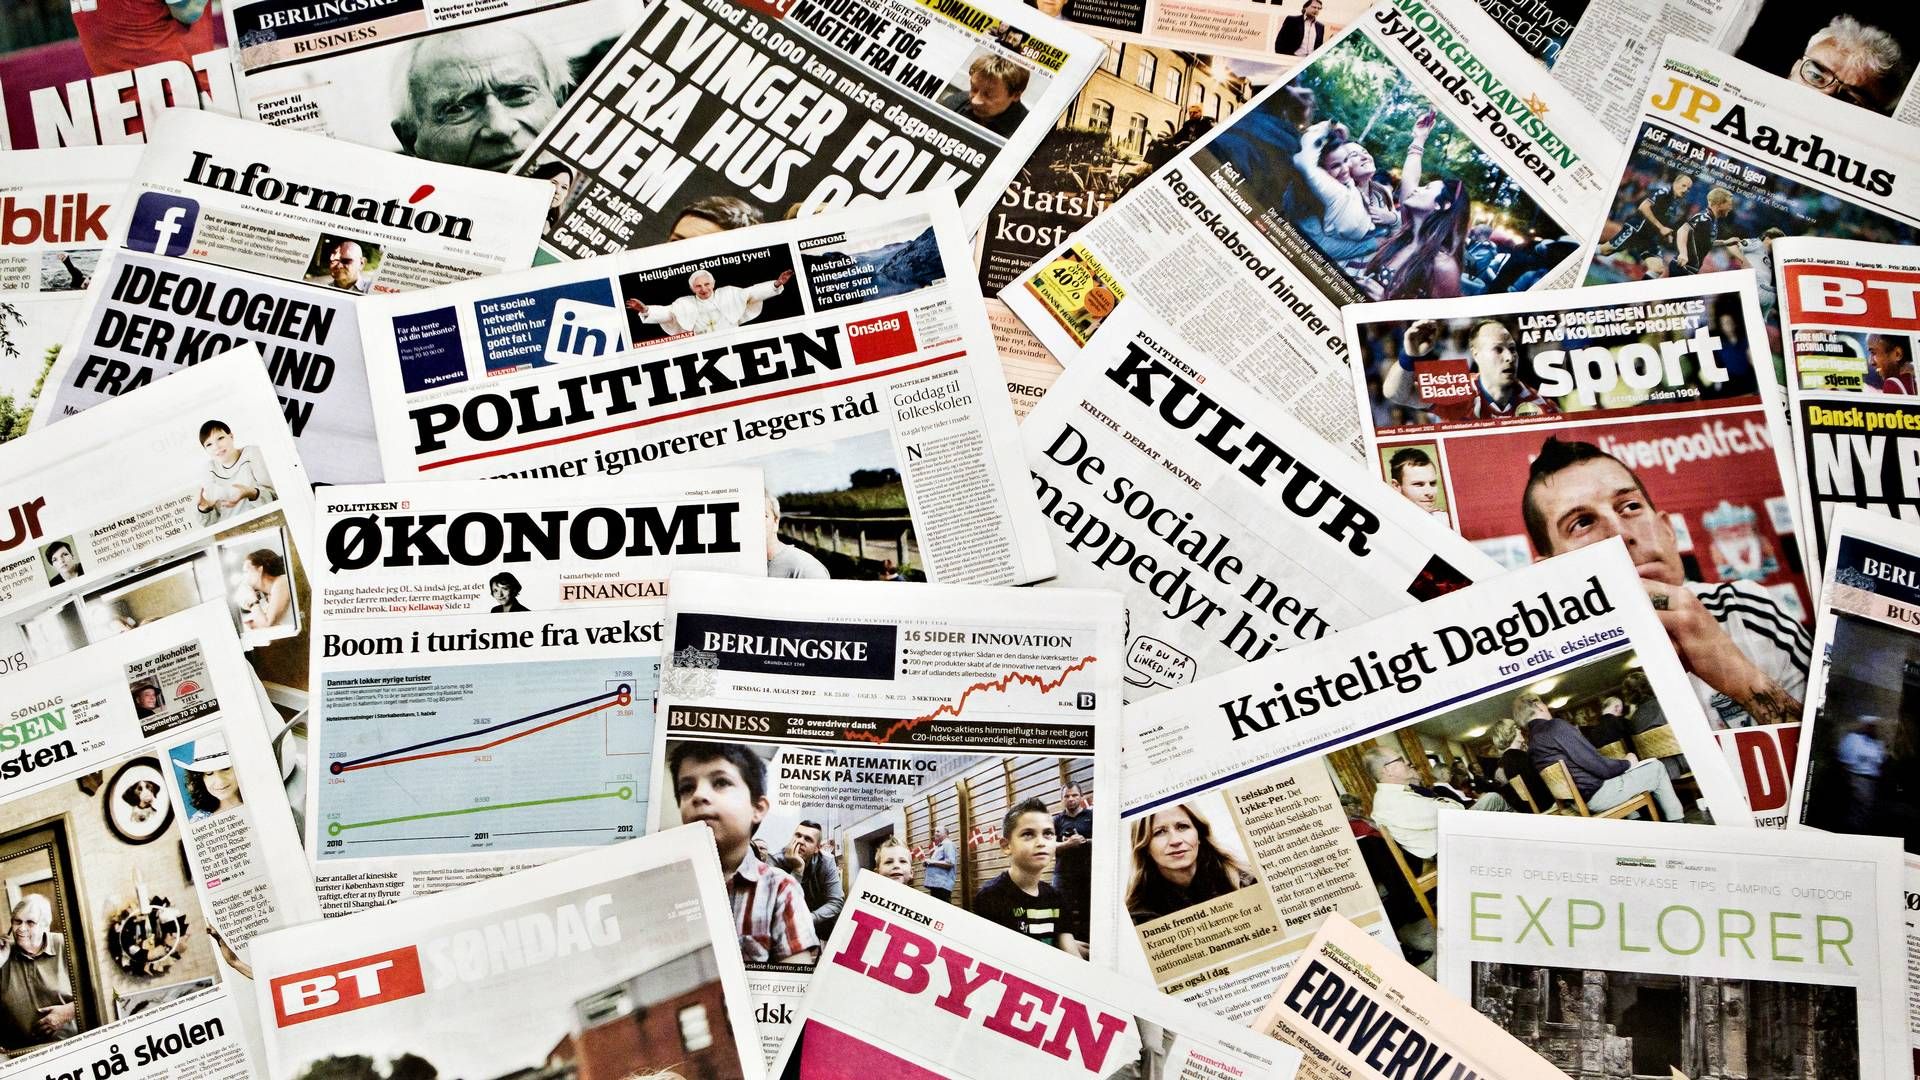 Flere dagblade såsom Politiken, Information og Kristeligt Dagblad | Foto: Sisse Dupont